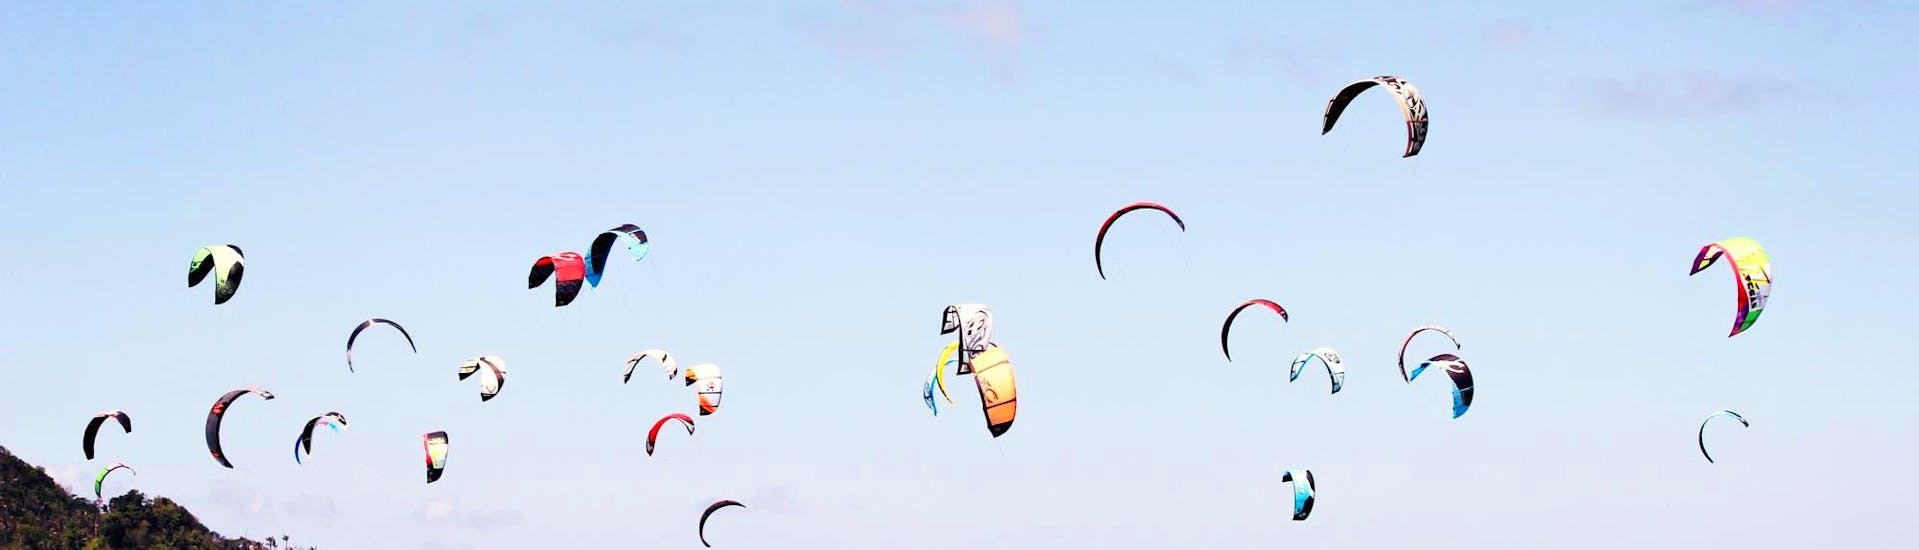 Kitesurfing Lessons in Leucate for Beginners.